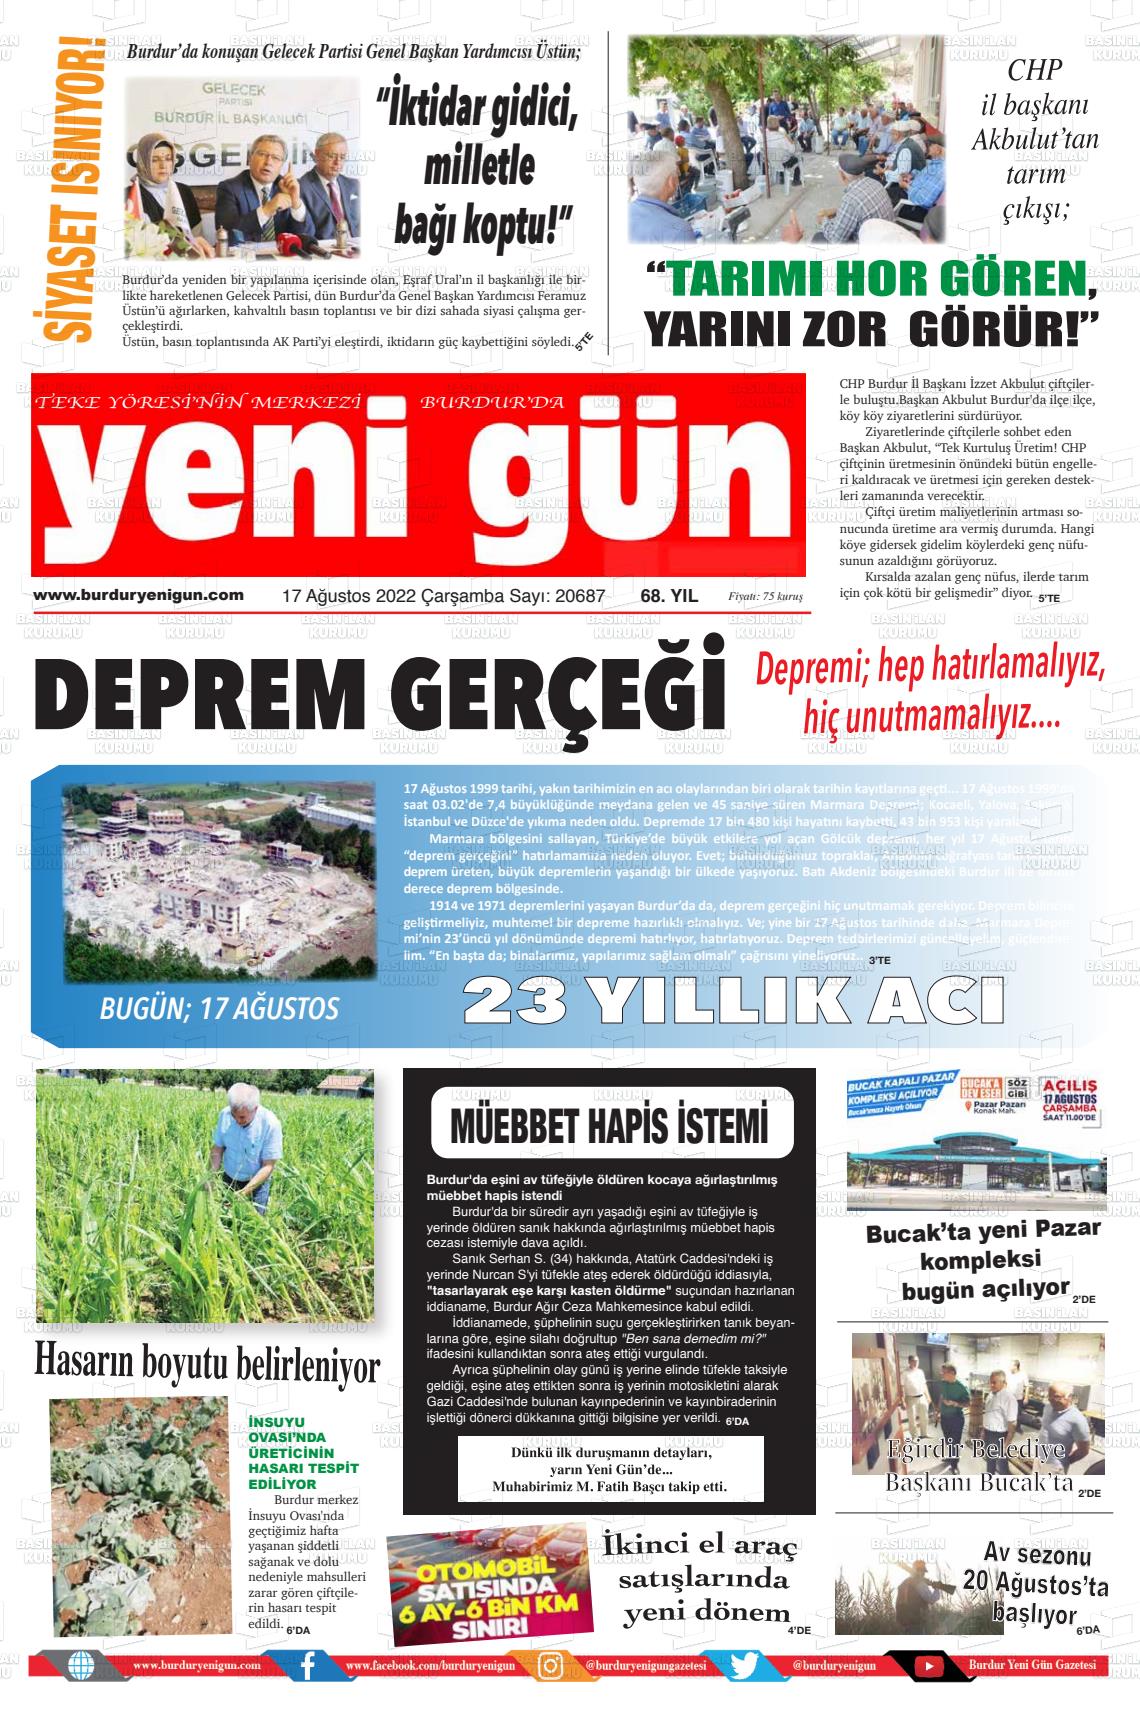 17 Ağustos 2022 Burdur Yeni Gün Gazete Manşeti